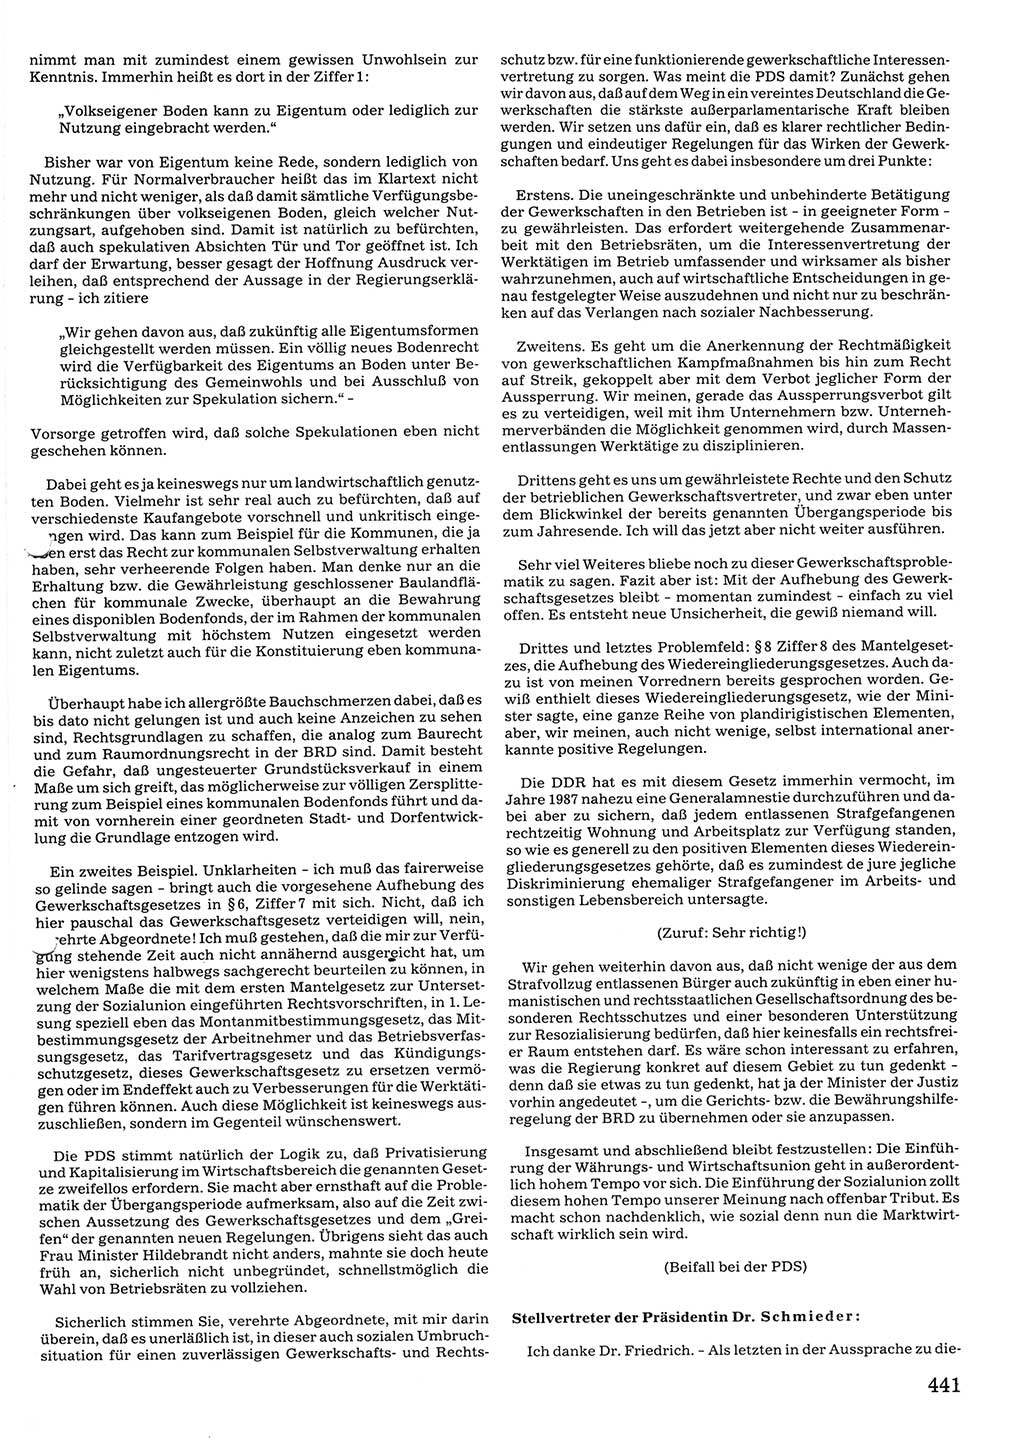 Tagungen der Volkskammer (VK) der Deutschen Demokratischen Republik (DDR), 10. Wahlperiode 1990, Seite 441 (VK. DDR 10. WP. 1990, Prot. Tg. 1-38, 5.4.-2.10.1990, S. 441)